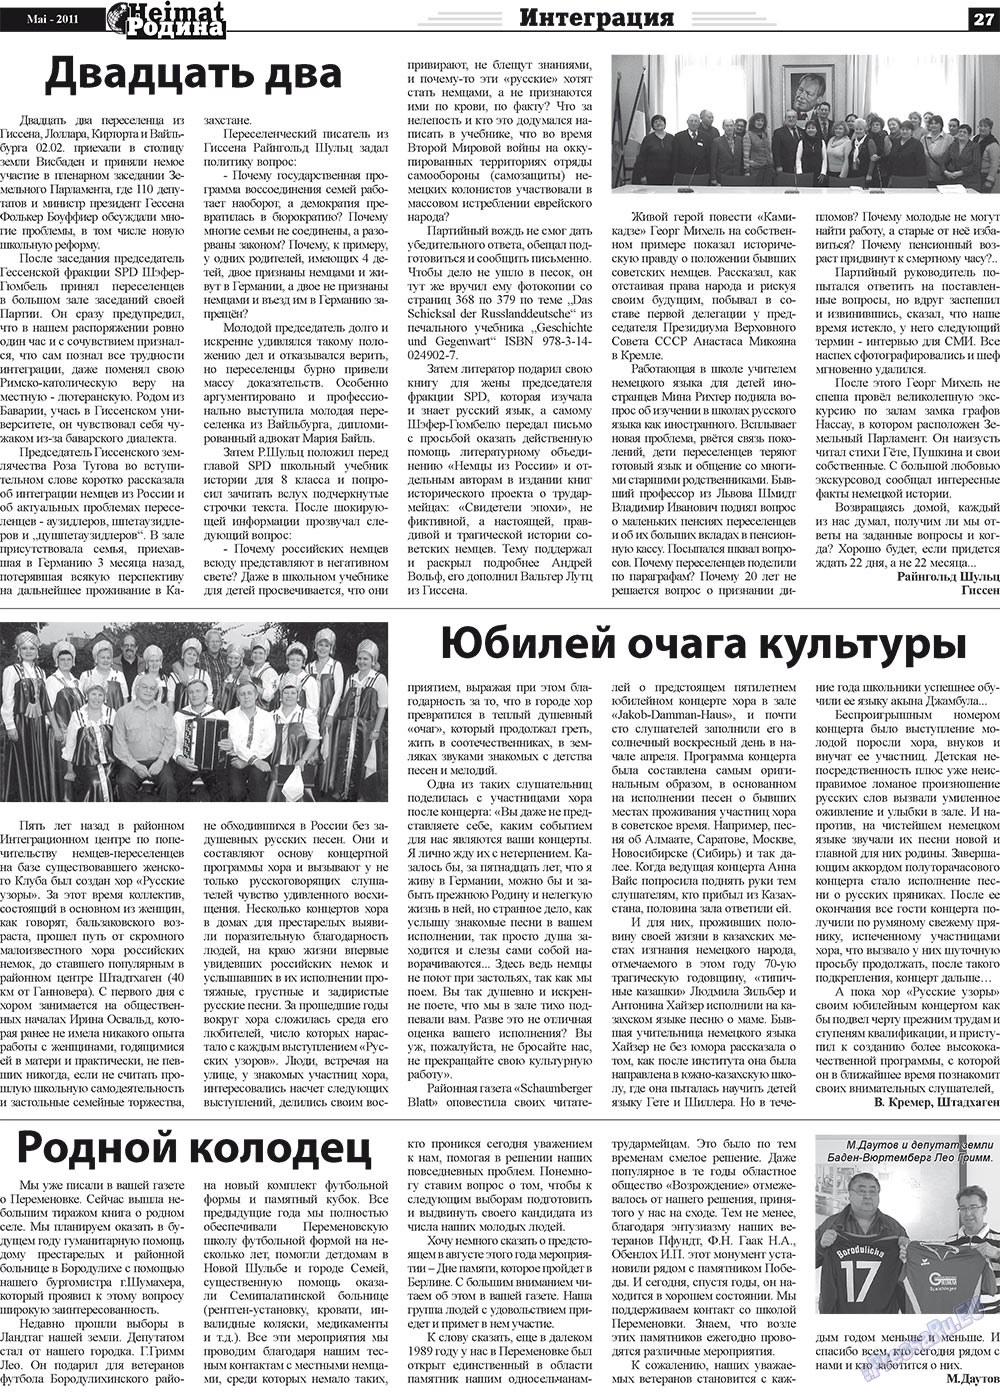 Heimat-Родина (газета). 2011 год, номер 5, стр. 27